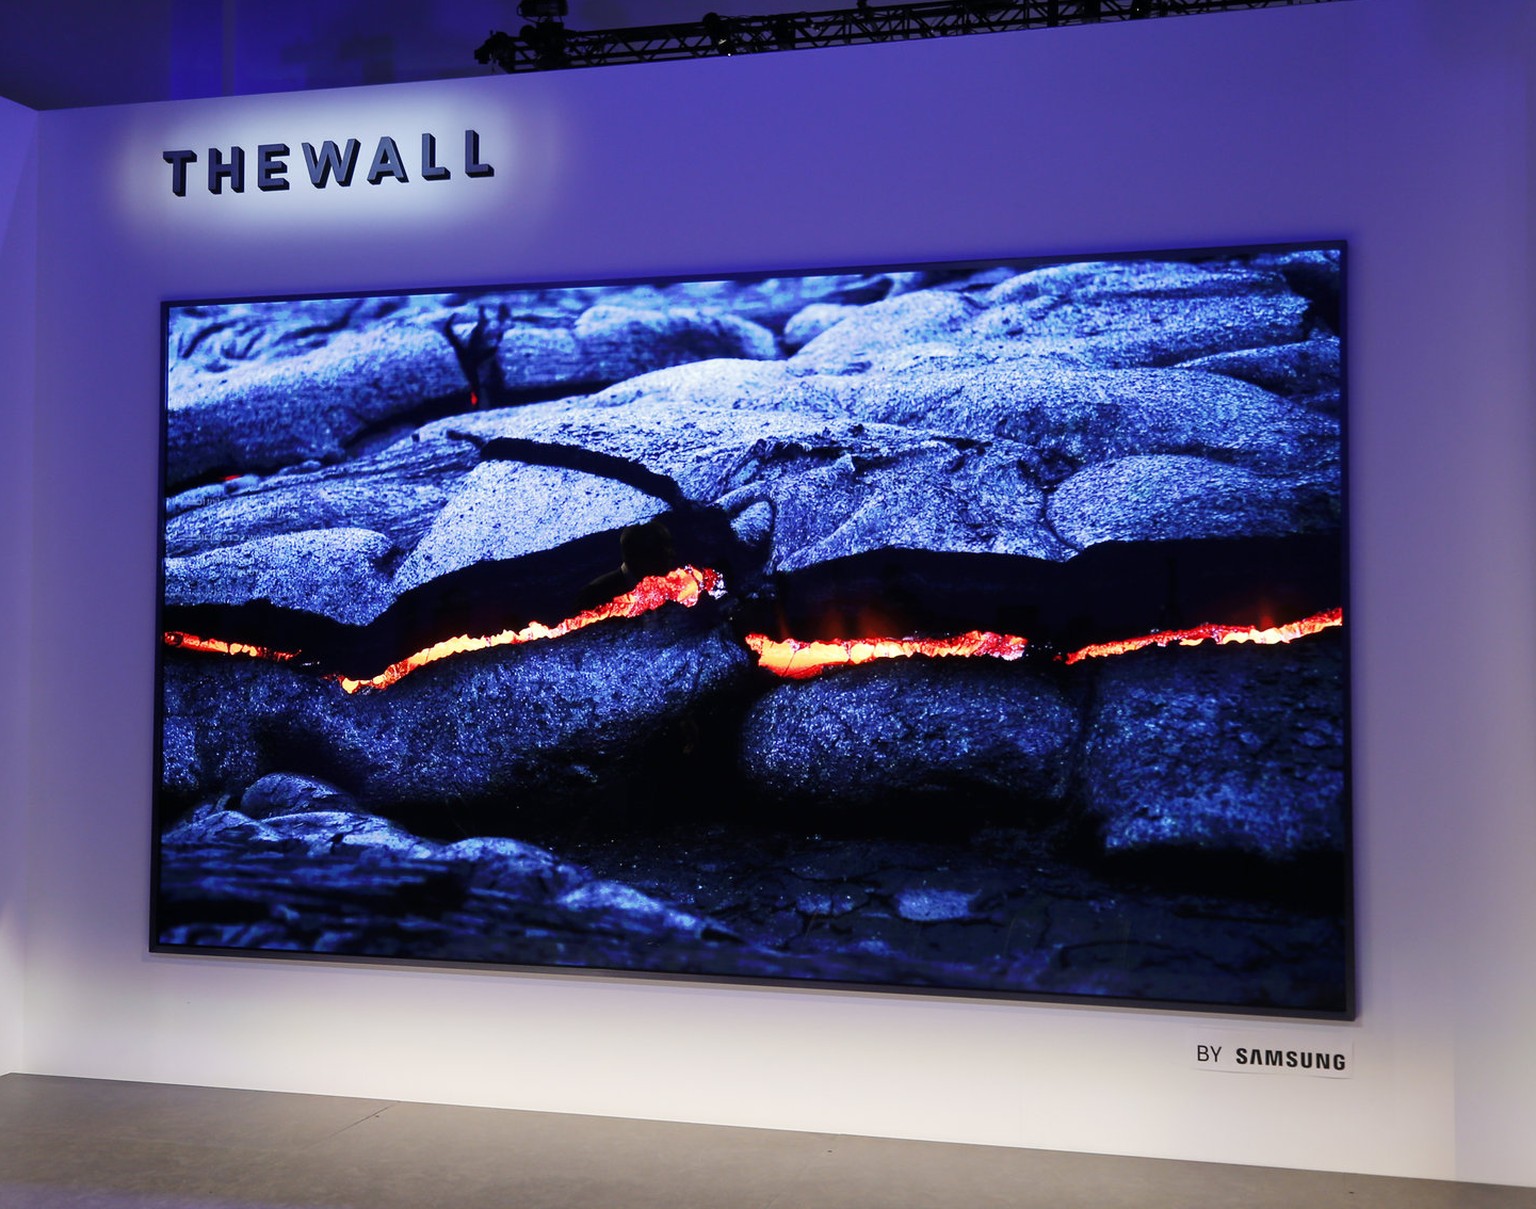 Anfang 2018 präsentiert Samsung einen<a href="https://www.watson.ch/!587004020"> Superfernseher</a>, der sich modular erweitern lässt.